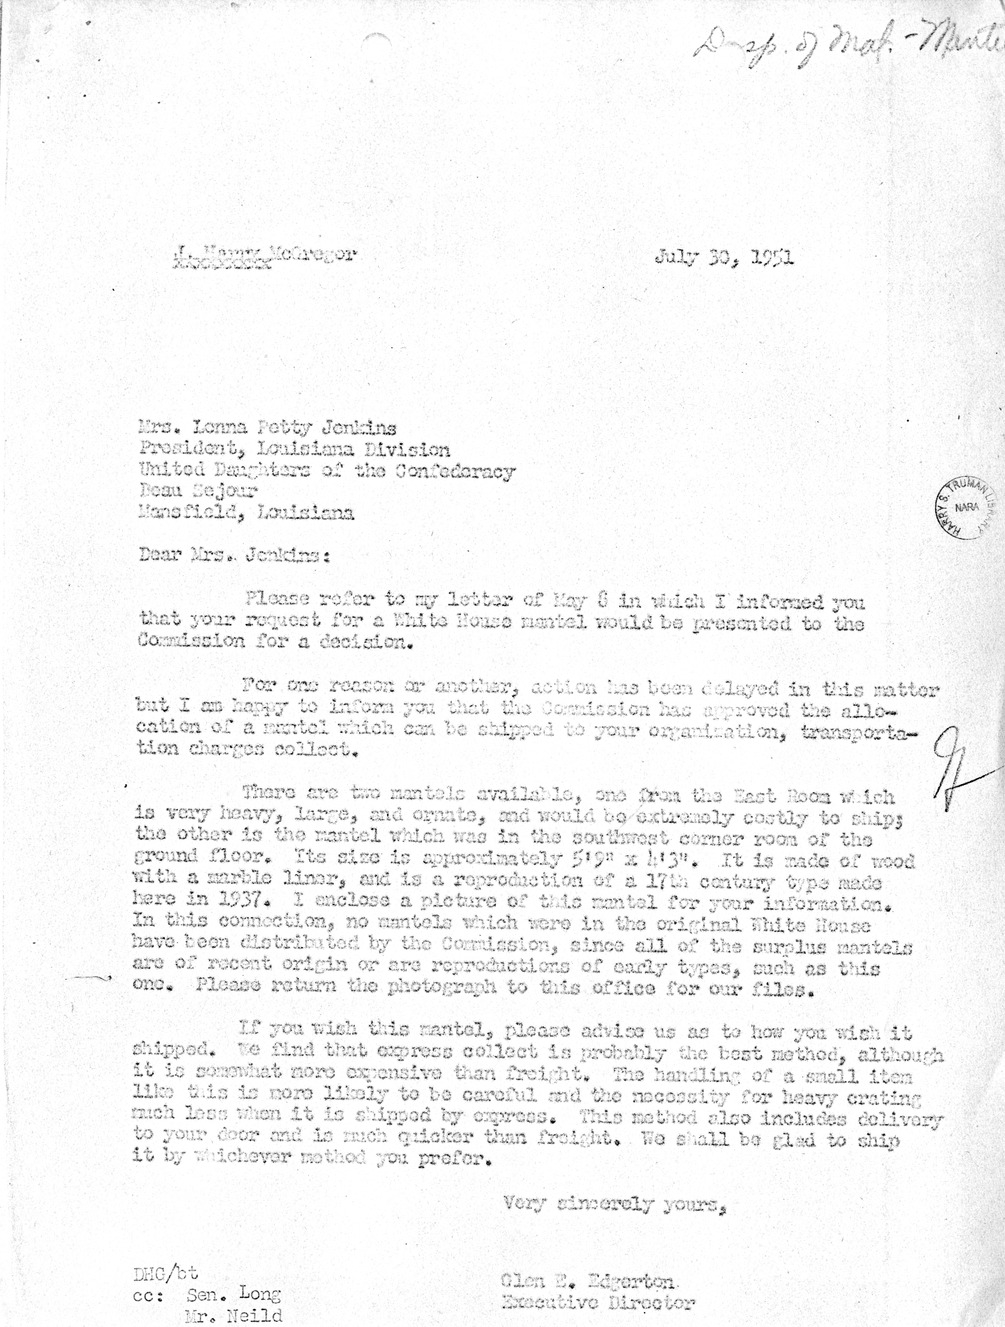 Letter from Major General Glen E. Edgerton to Mrs. Lonna Petty Jenkins